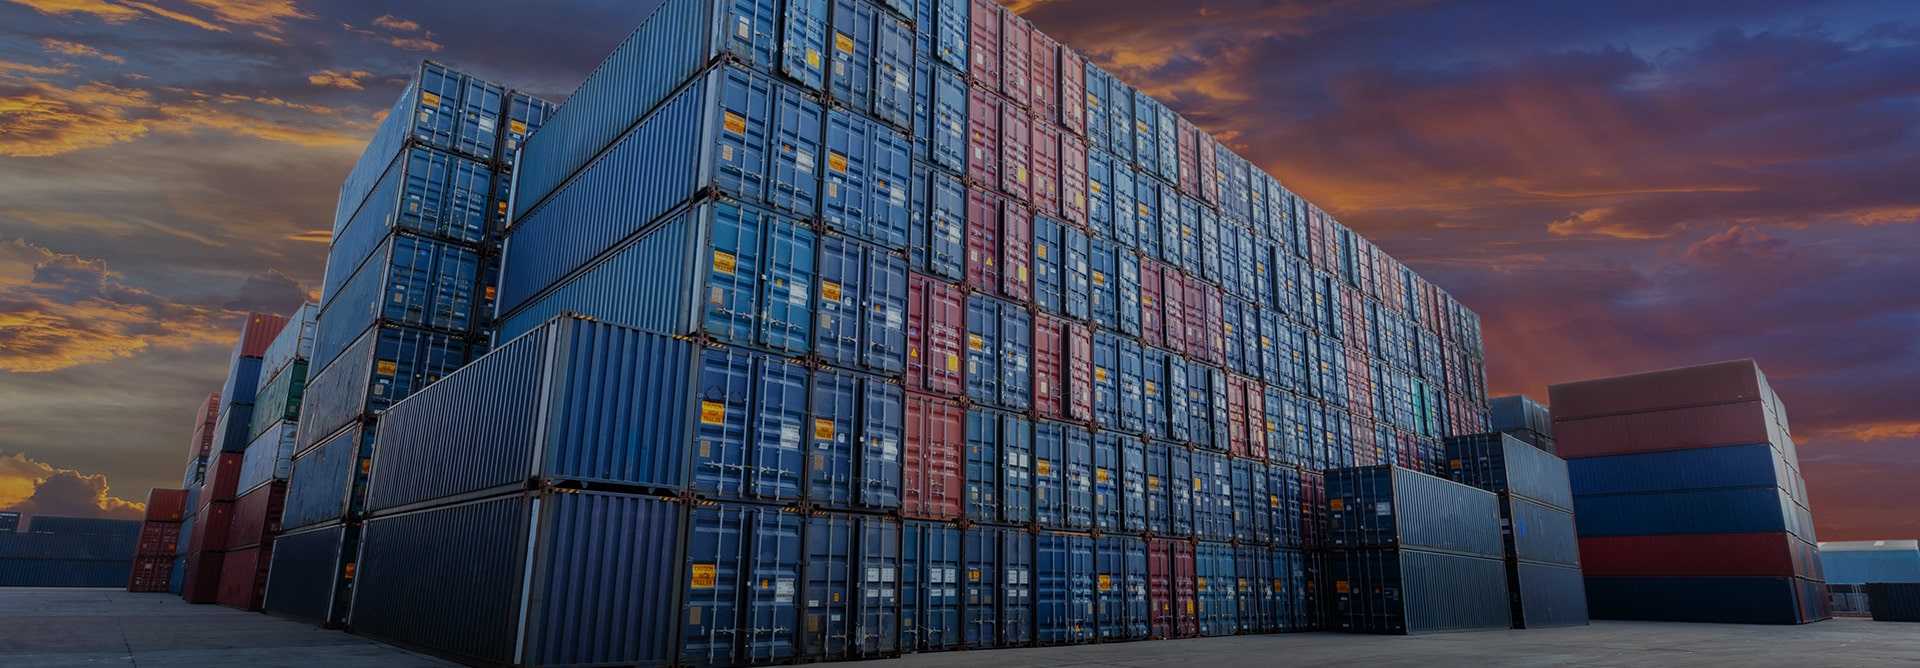 7 Store fordeler ved å velge lagercontainer som lagerløsning